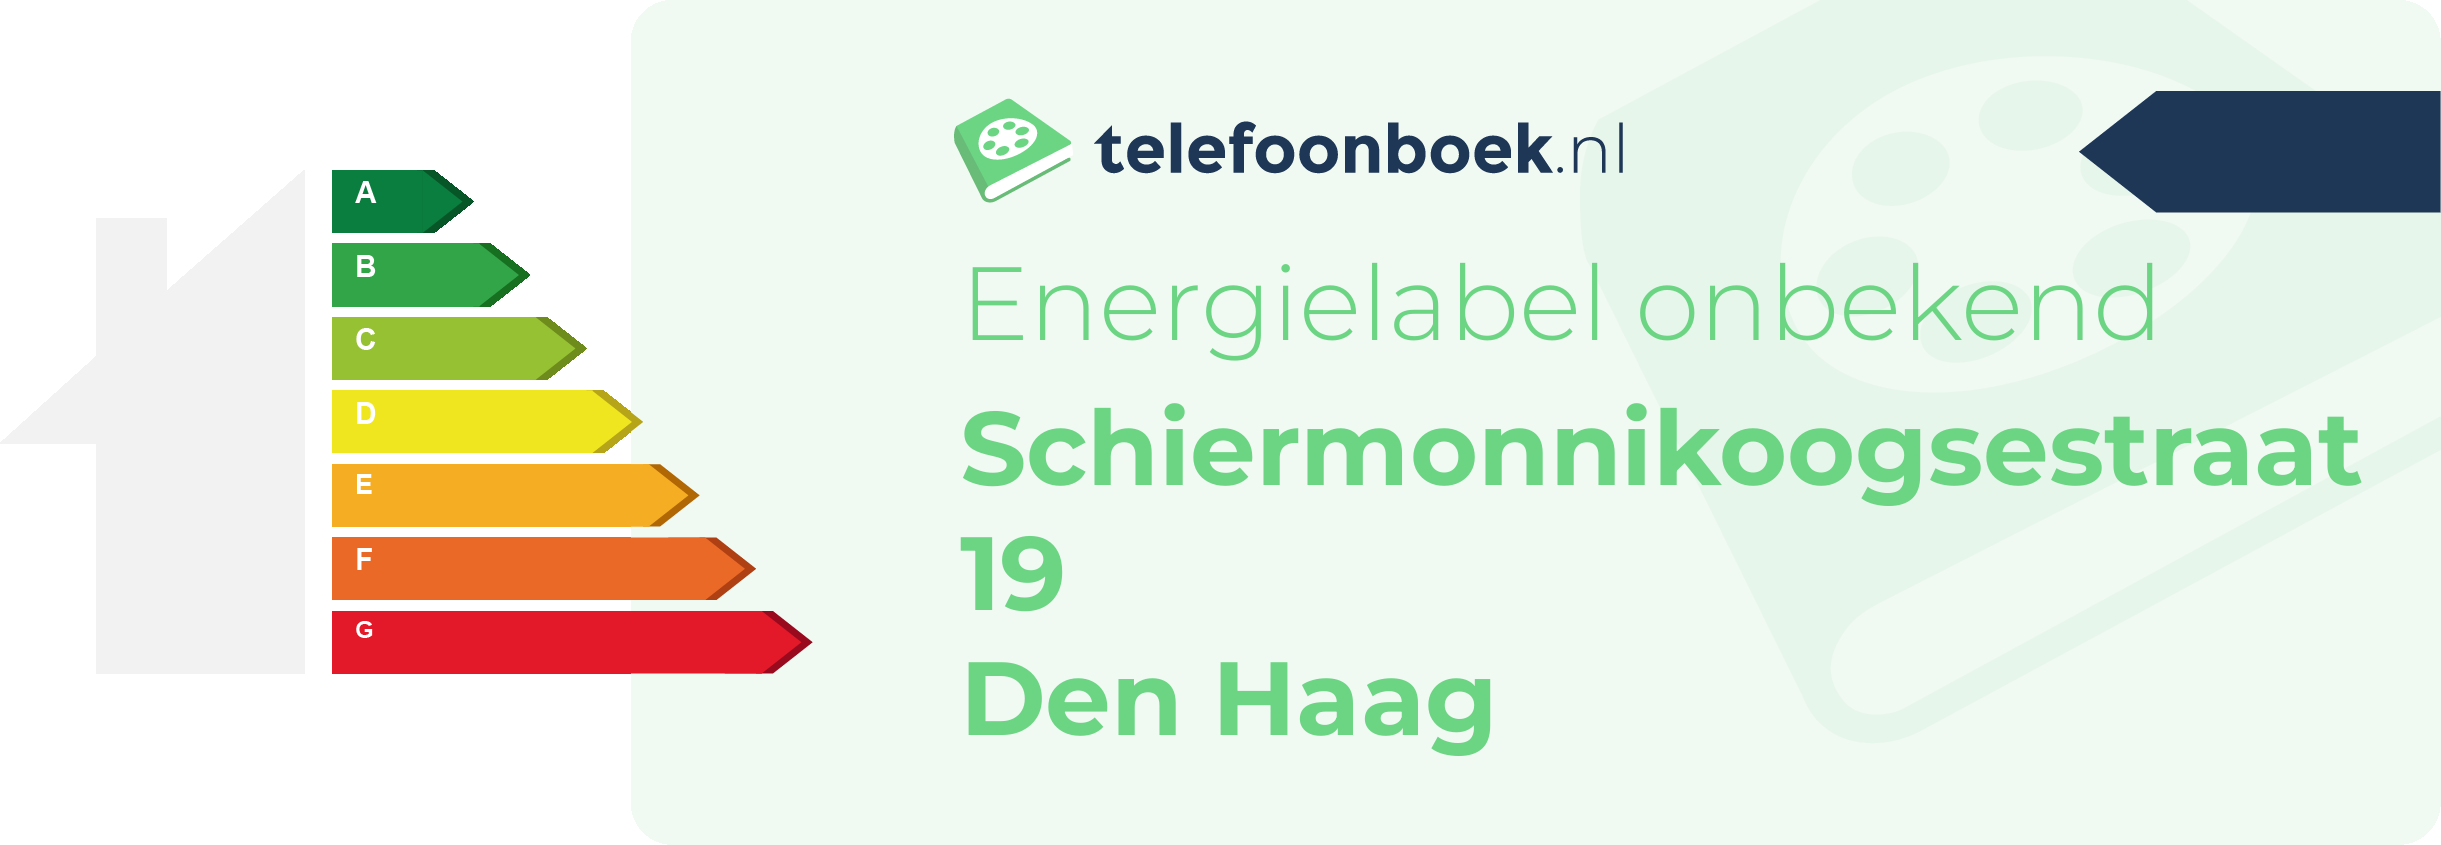 Energielabel Schiermonnikoogsestraat 19 Den Haag